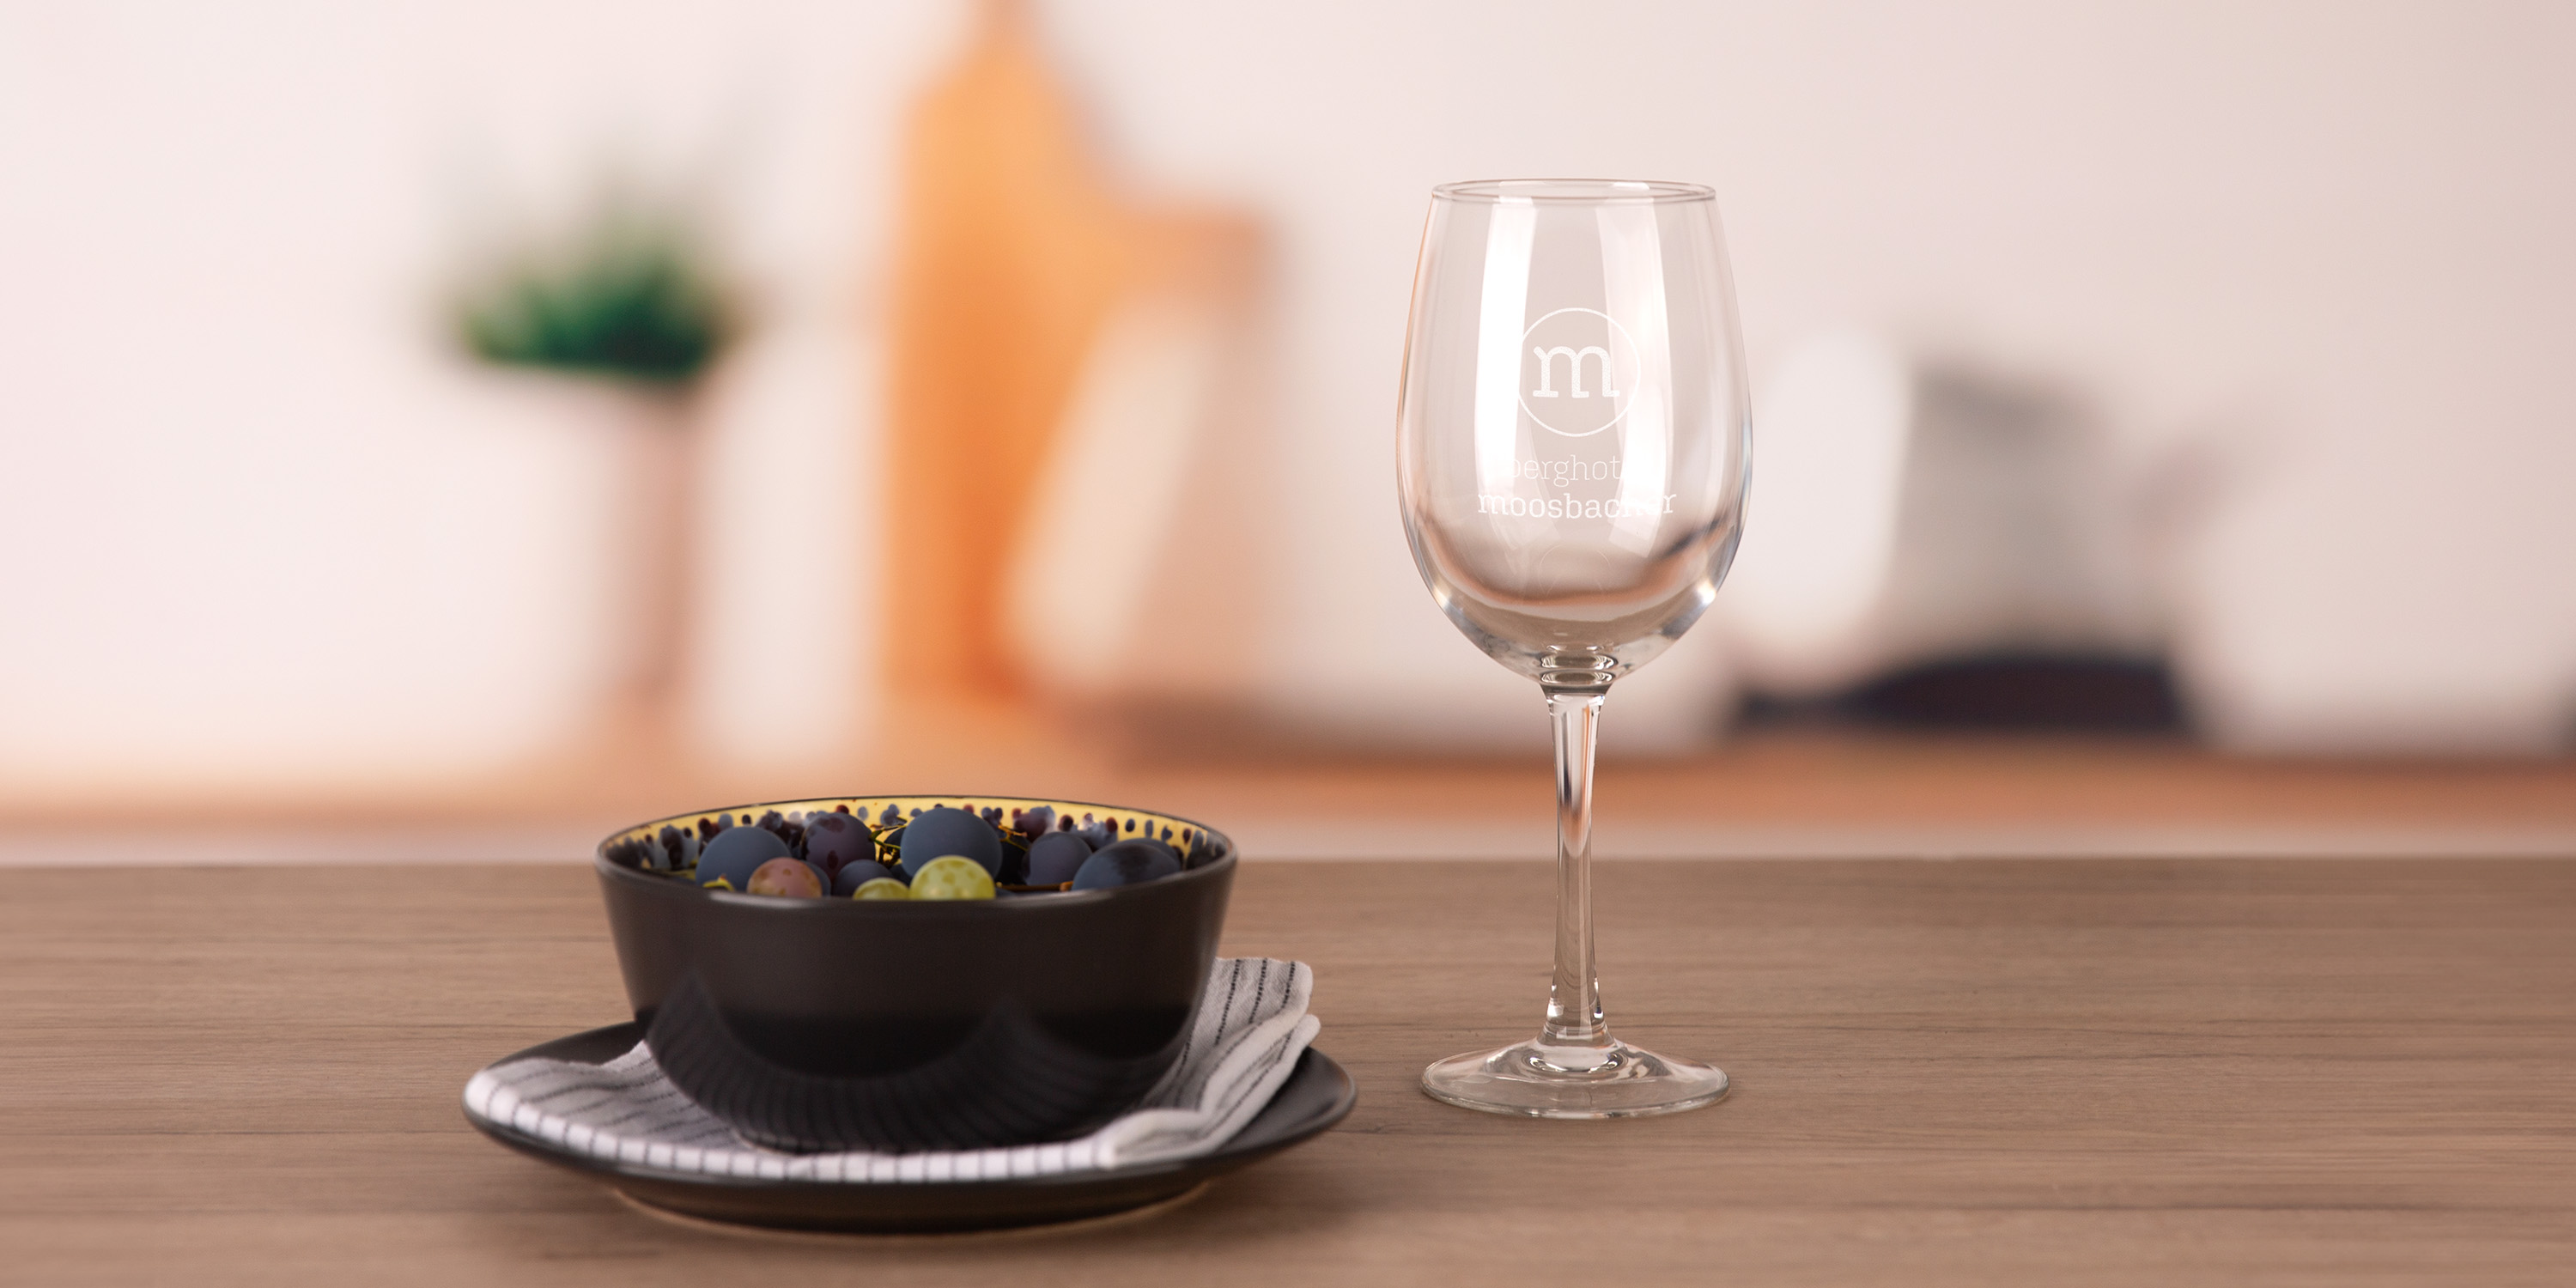 Ein Weinglas neben einem Suppenteller auf einem Holztisch